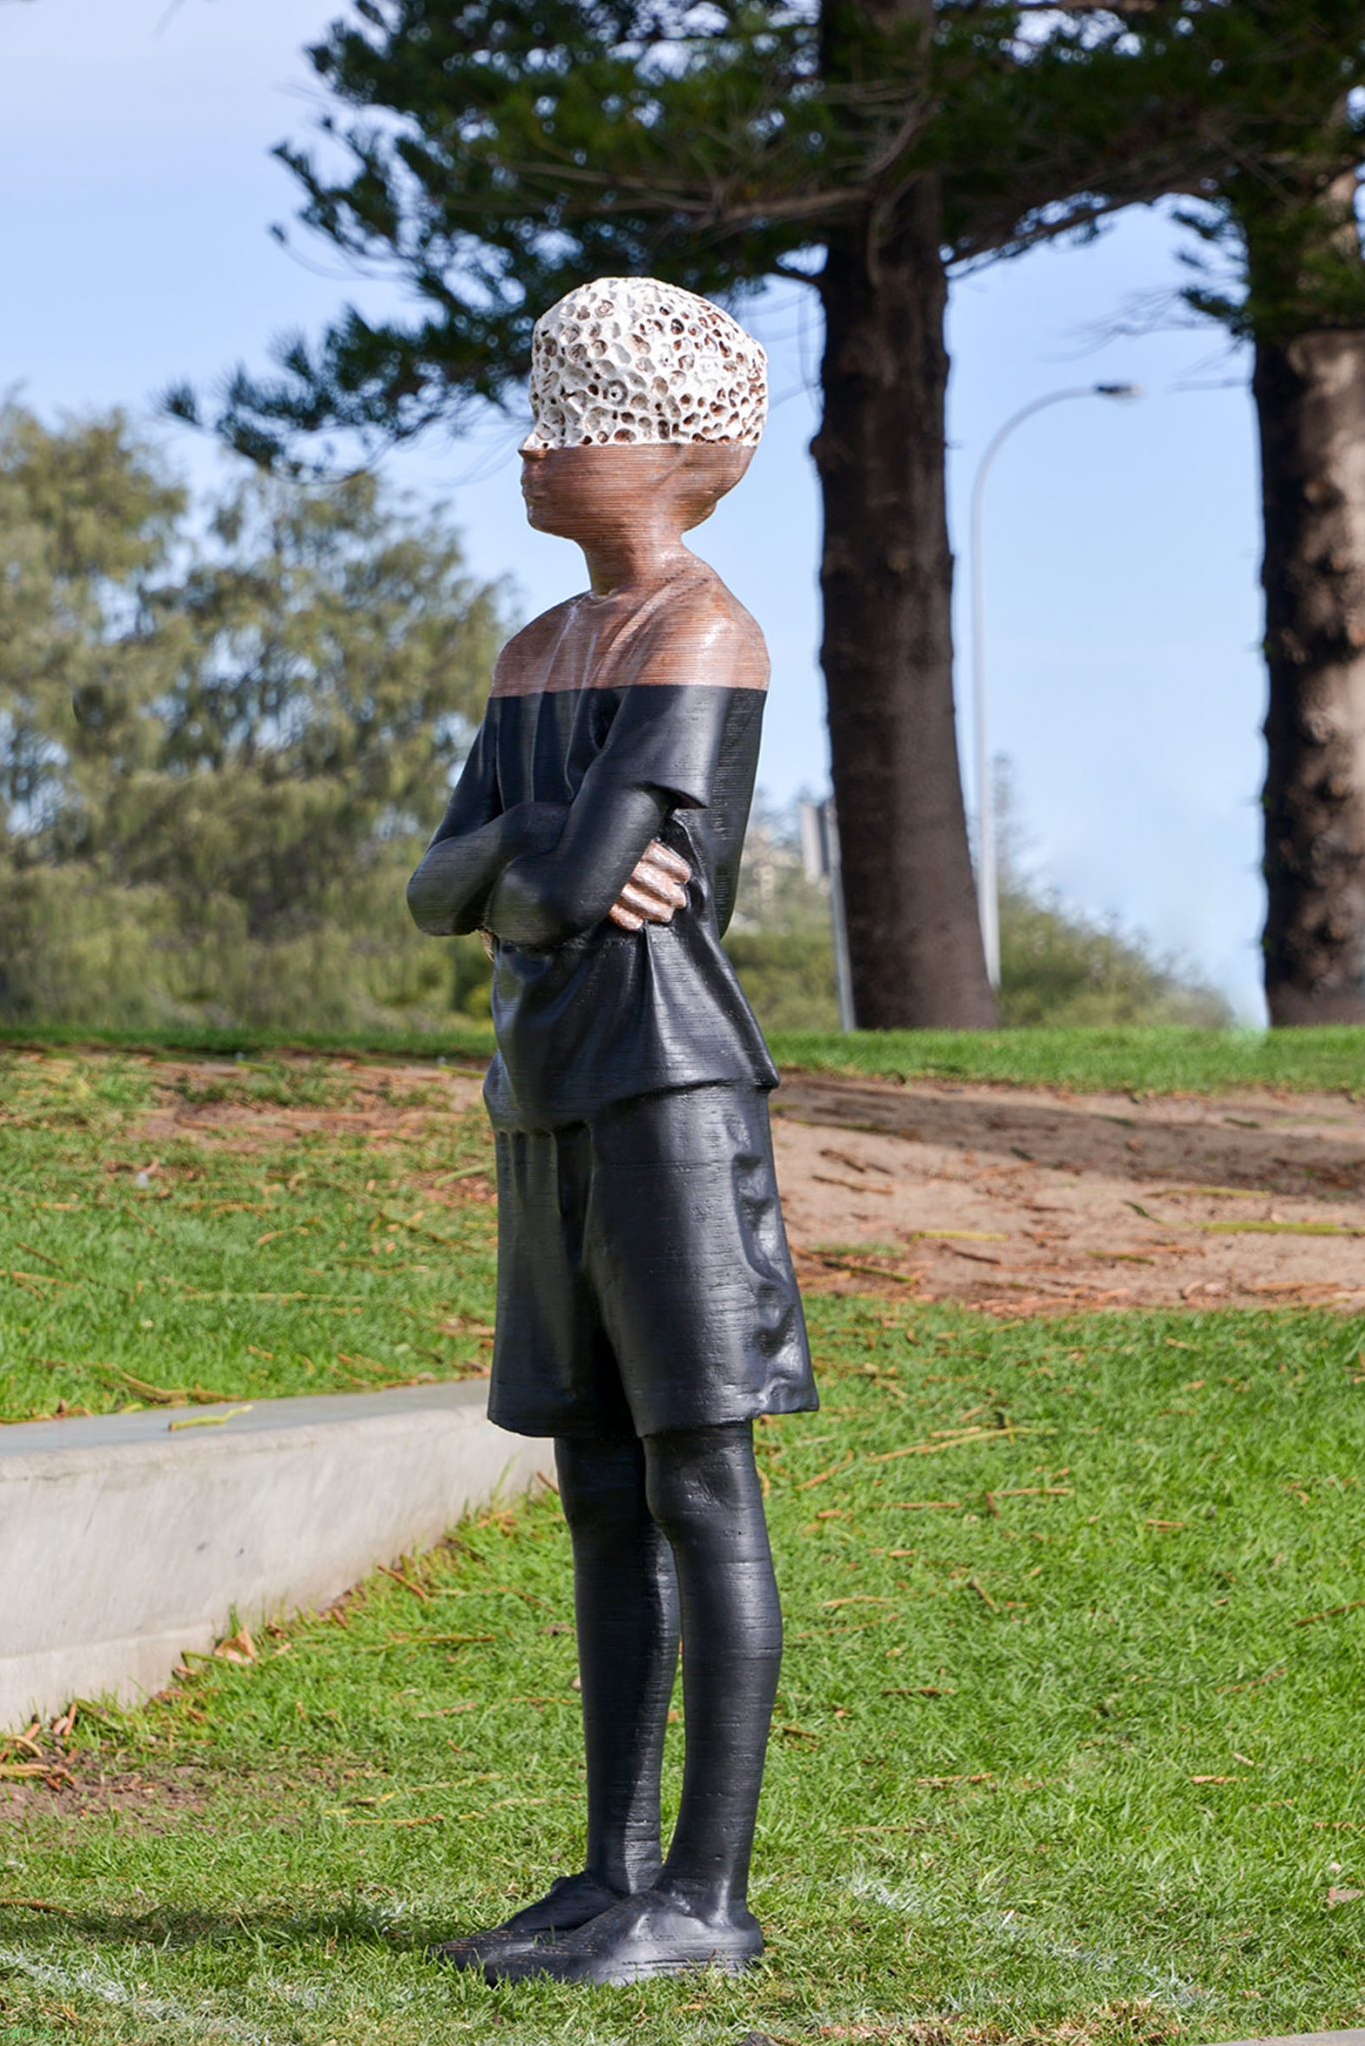 Фестиваль «Скульптура у моря» 2020 (Sculpture by the Sea) | Фестивали Австралии 